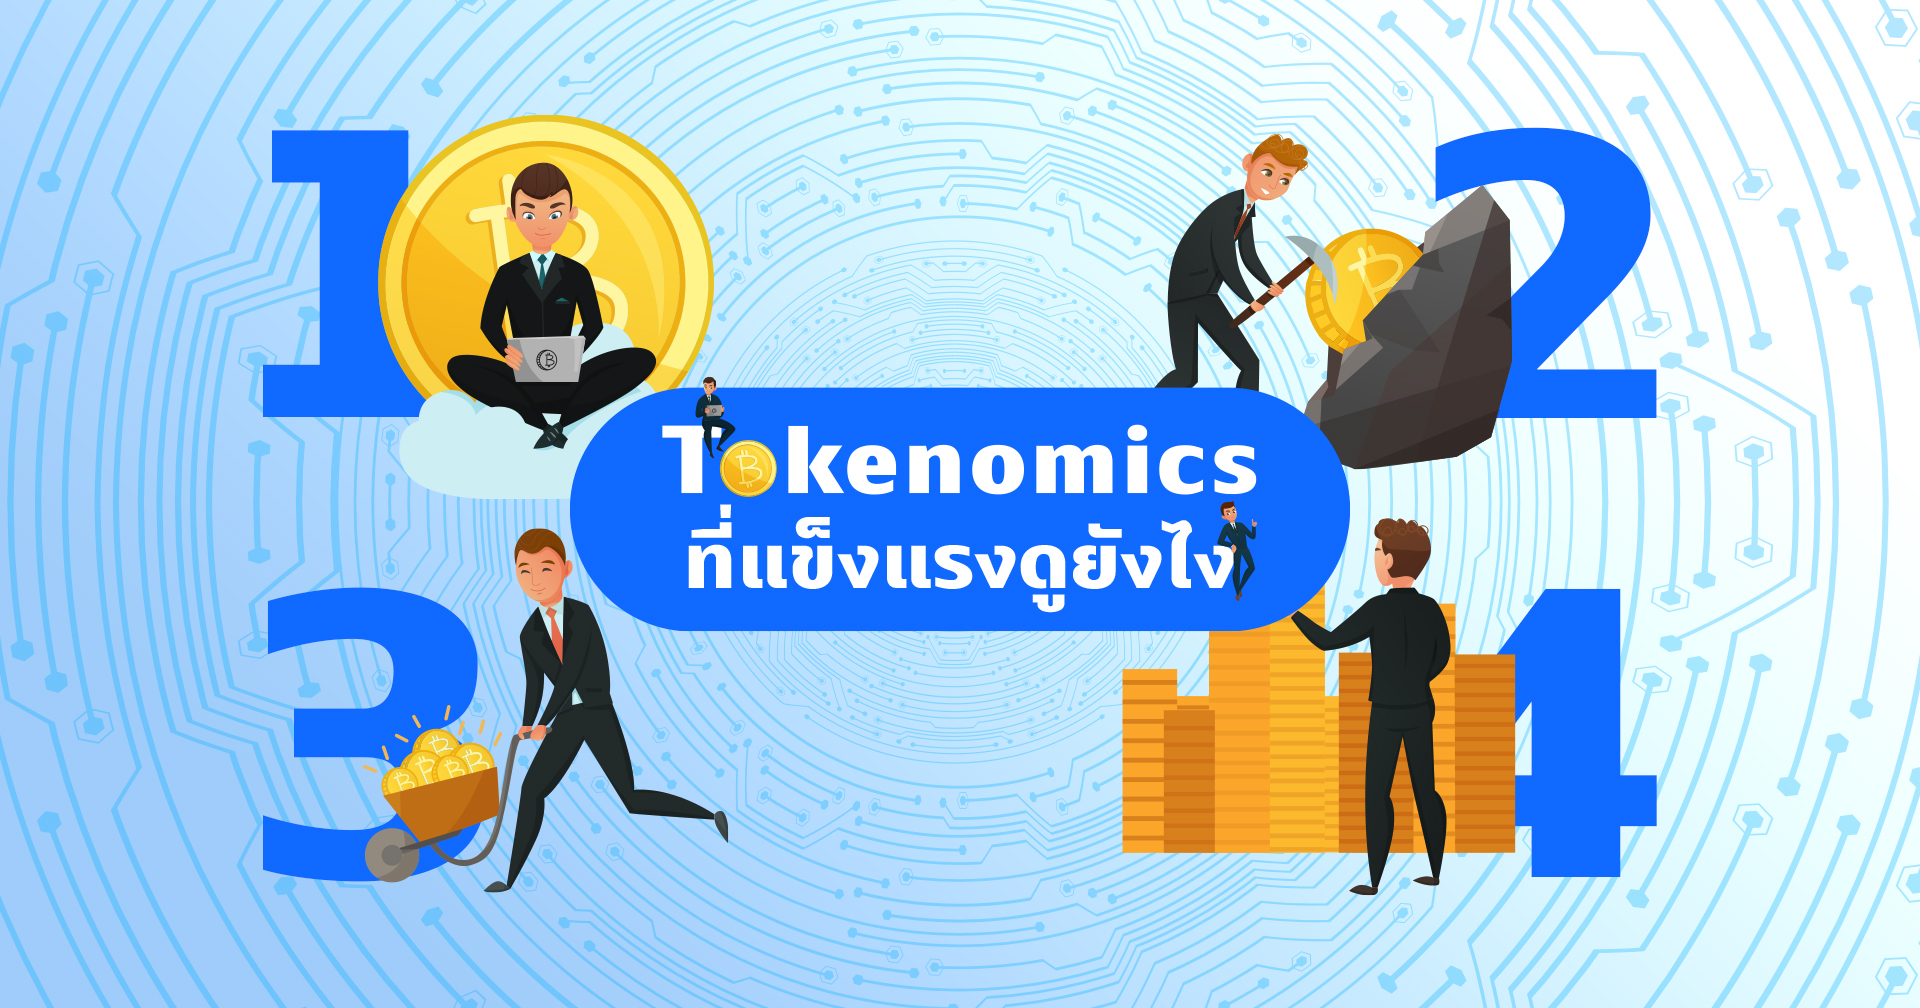 ก่อนลงทุนในคริปโทเคอร์เรนซี คุณรู้จัก Tokenomics ดีพอแล้วหรือยัง?